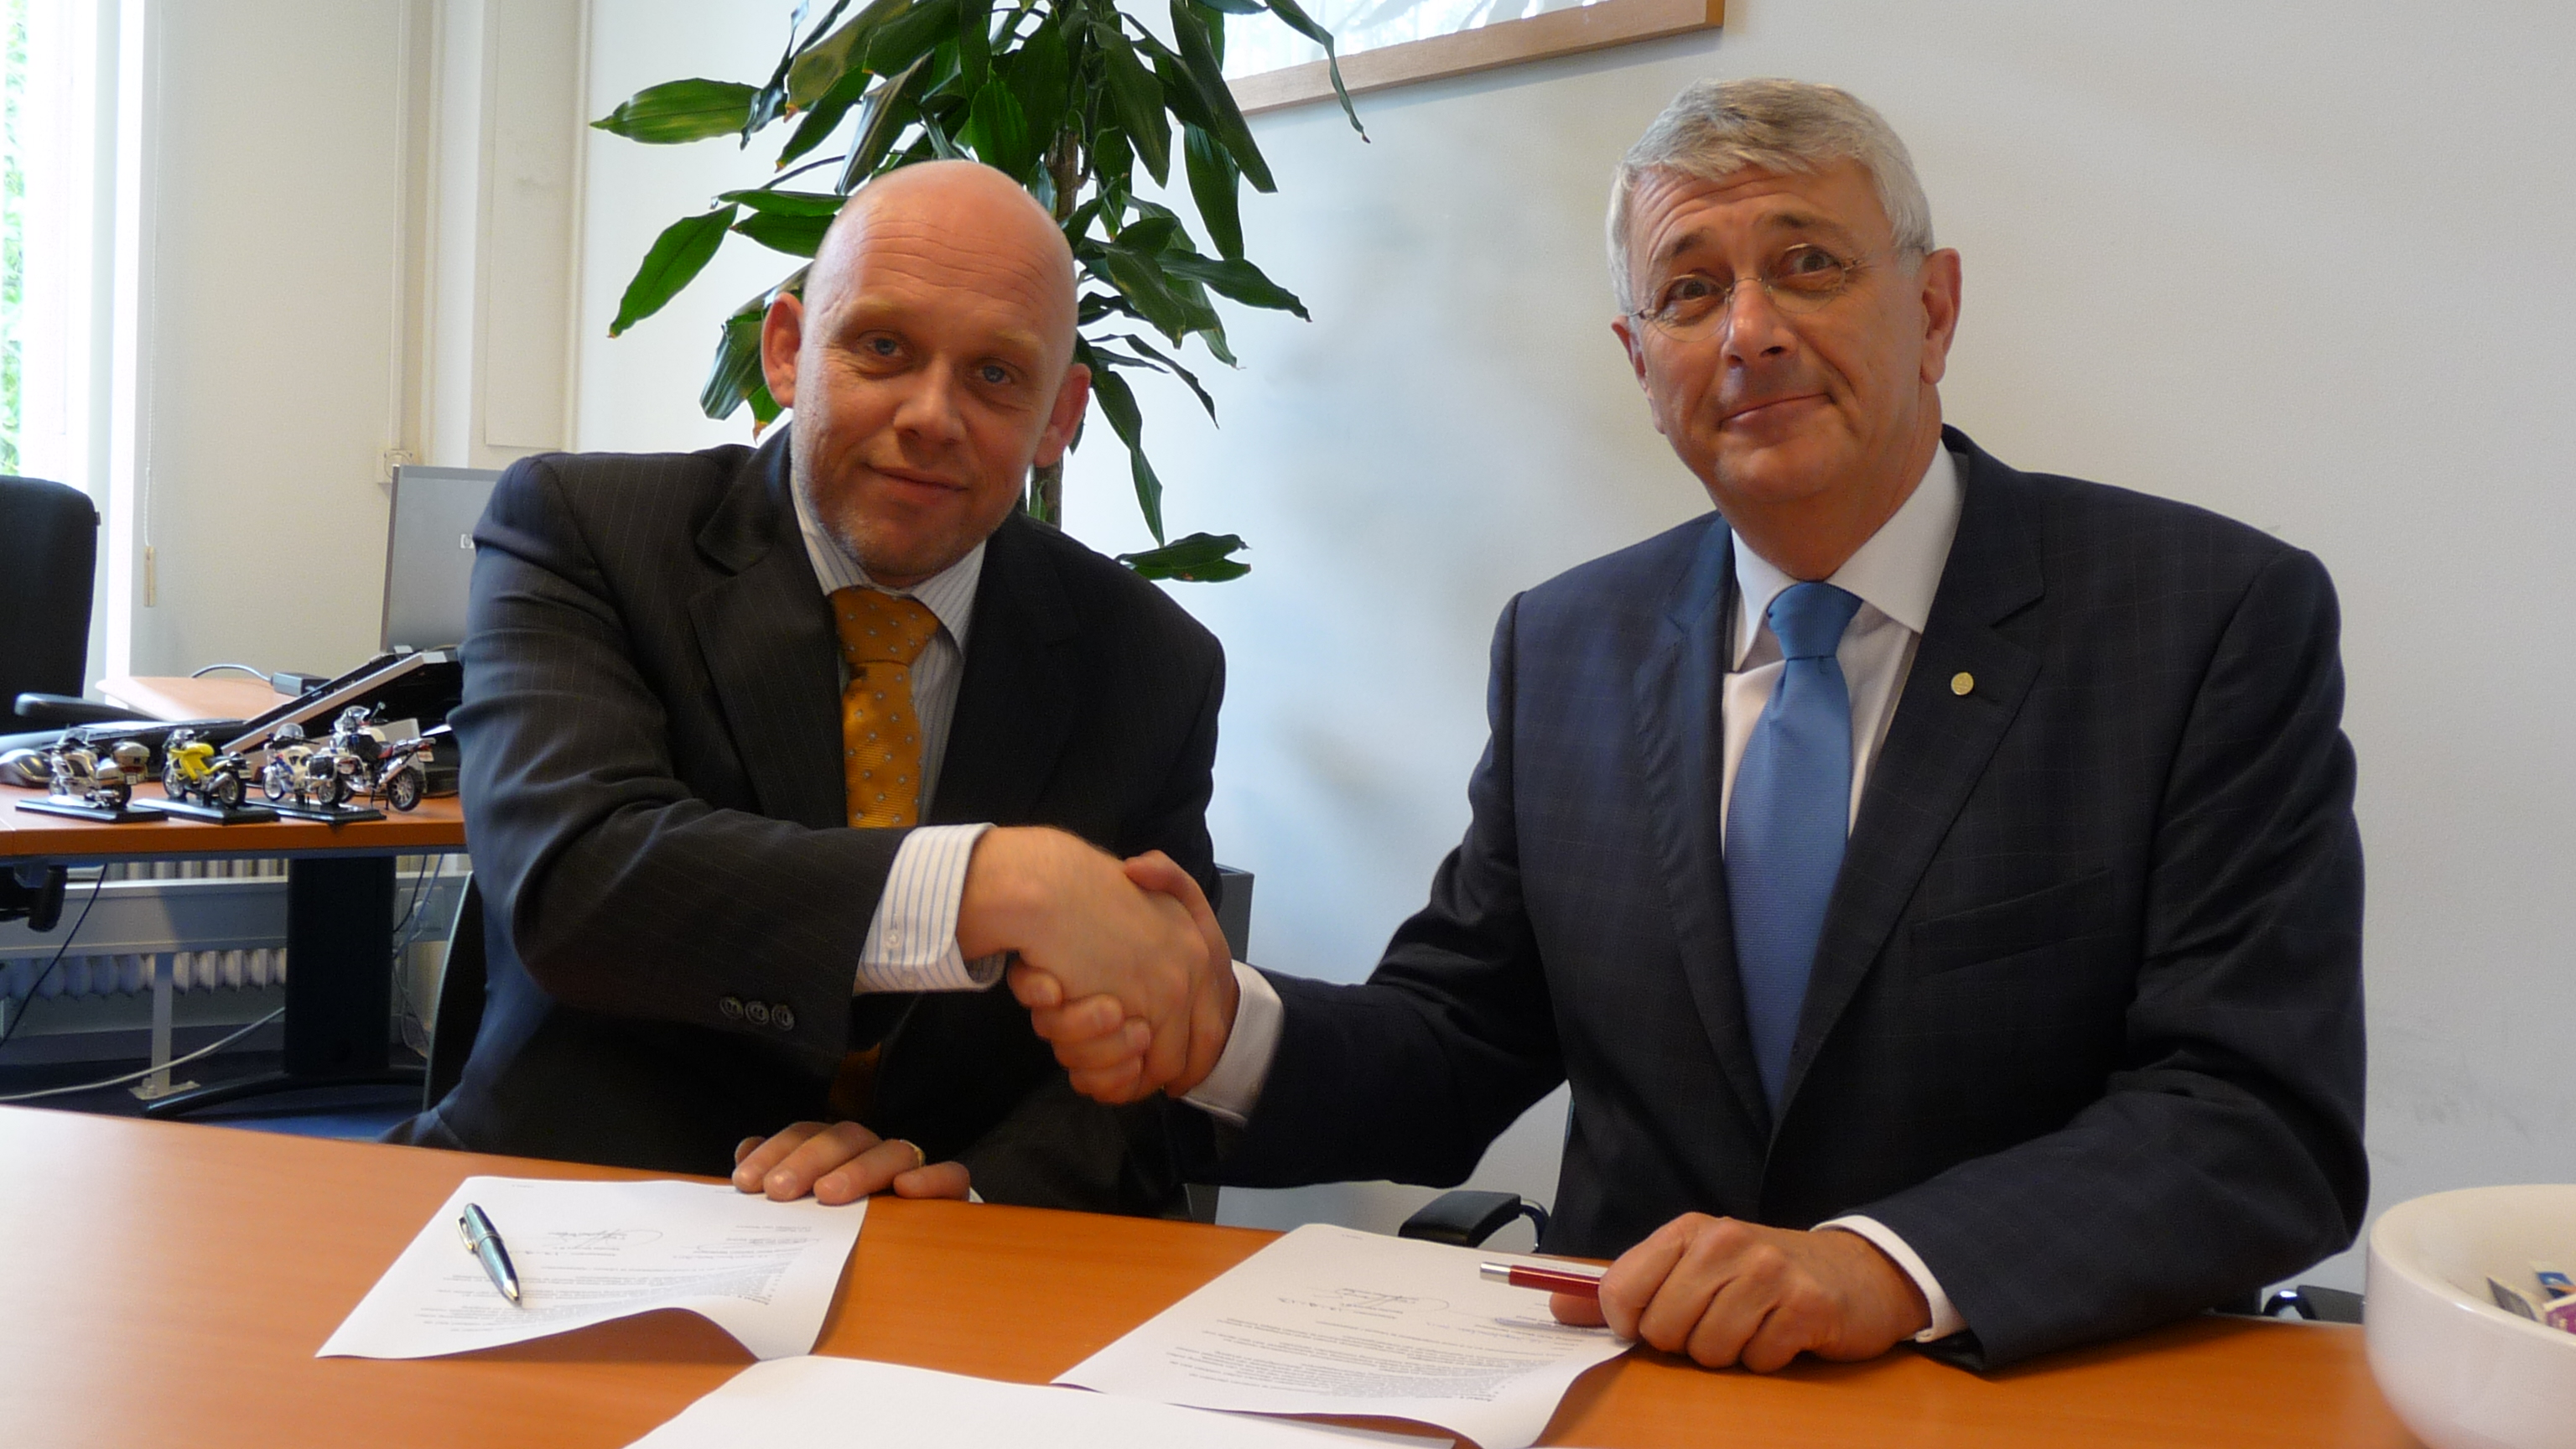 Directeuren Marc van der Klok en Tom Stuij bezegelen contract met handdruk